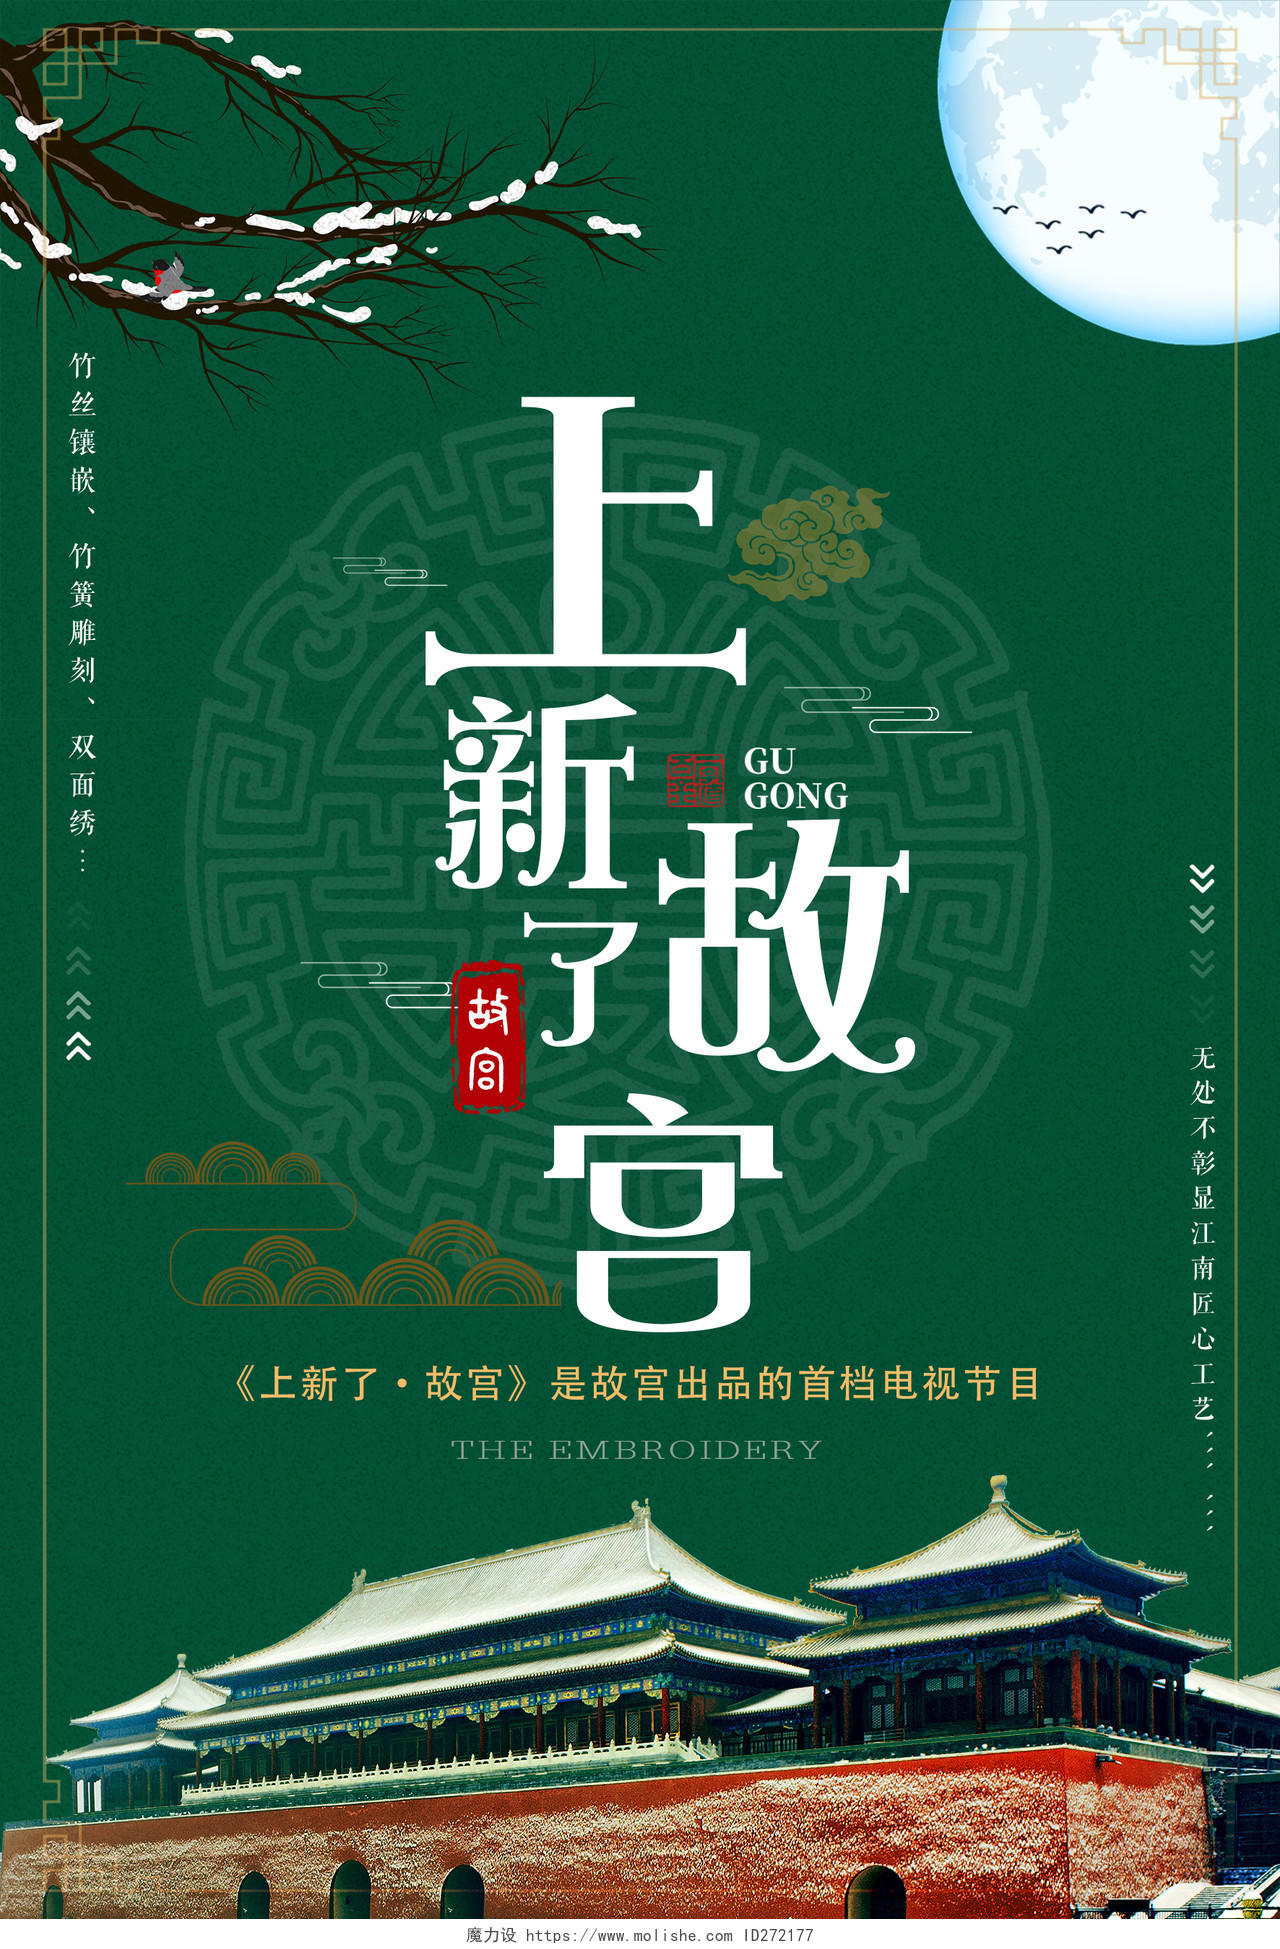 上新了故宫北京博物馆墨绿色中国风海报